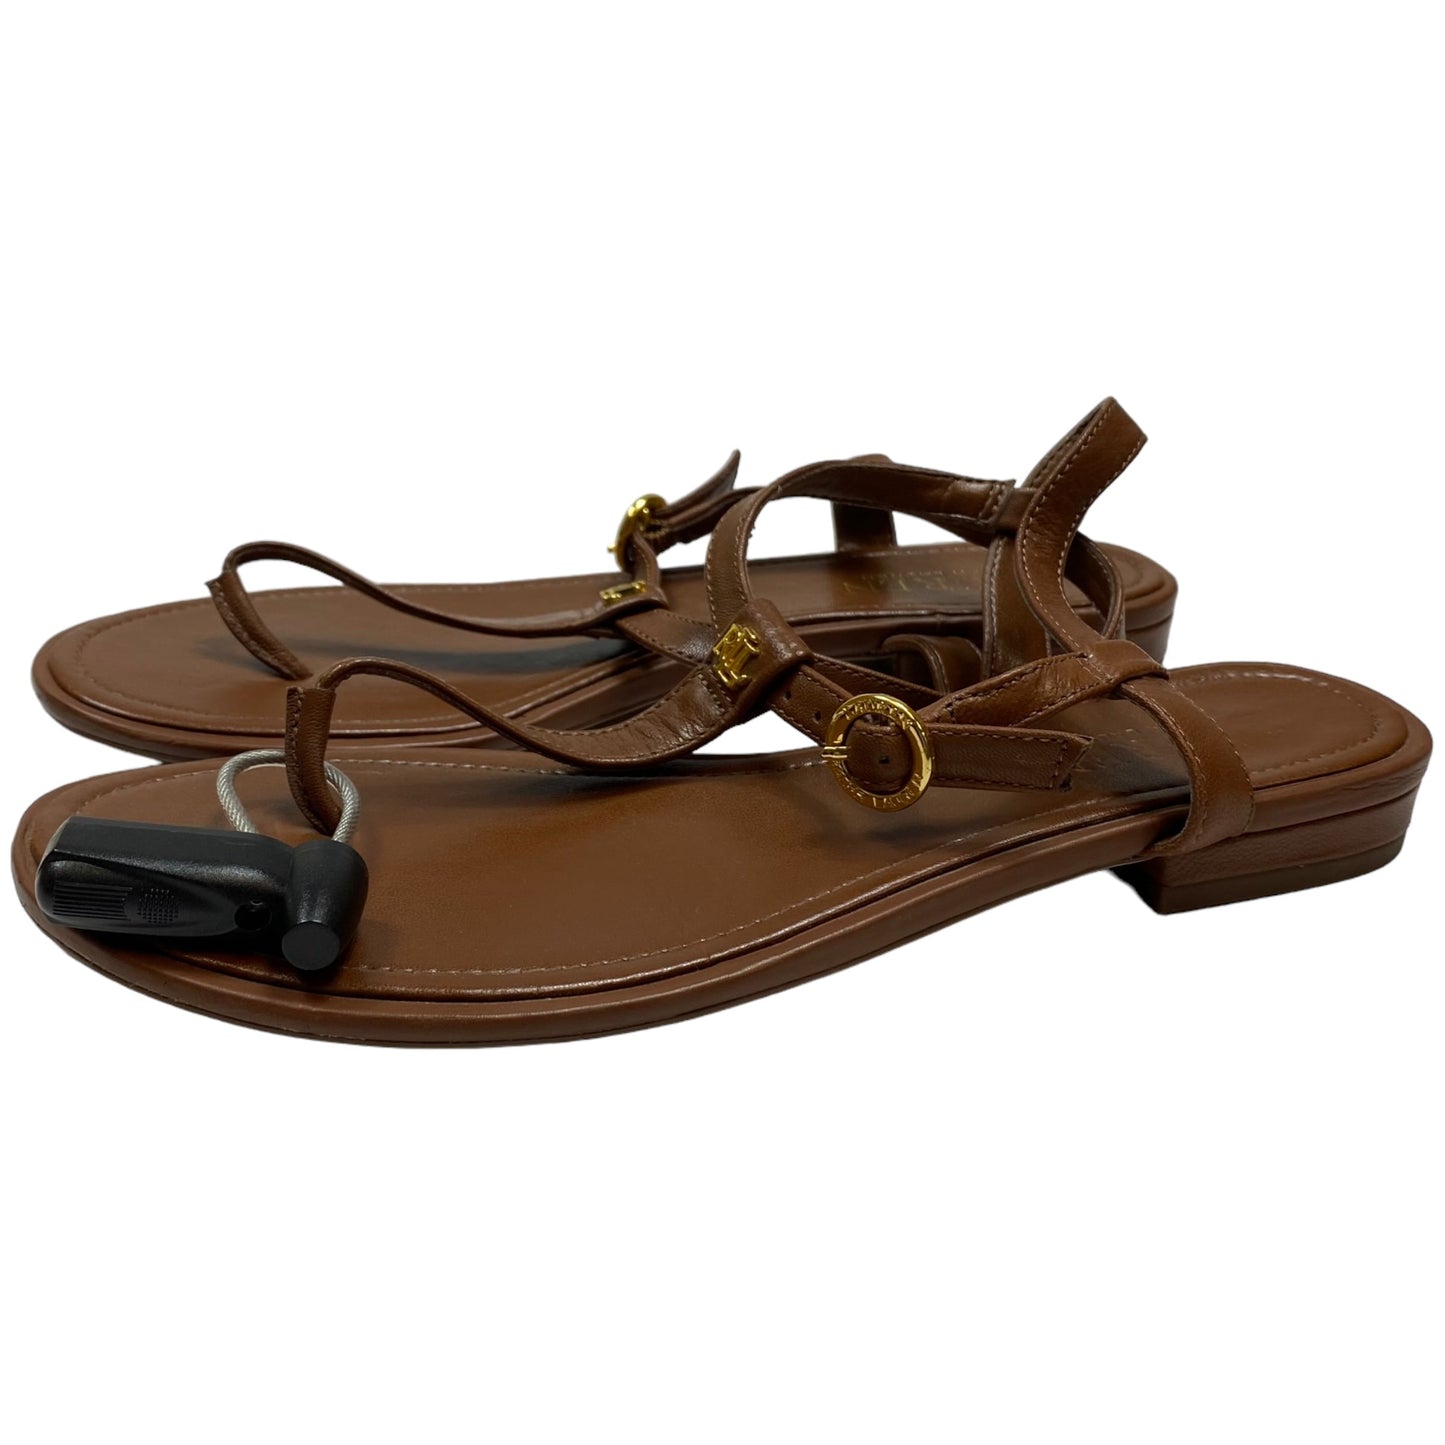 Brown Sandals Flats Ralph Lauren, Size 7